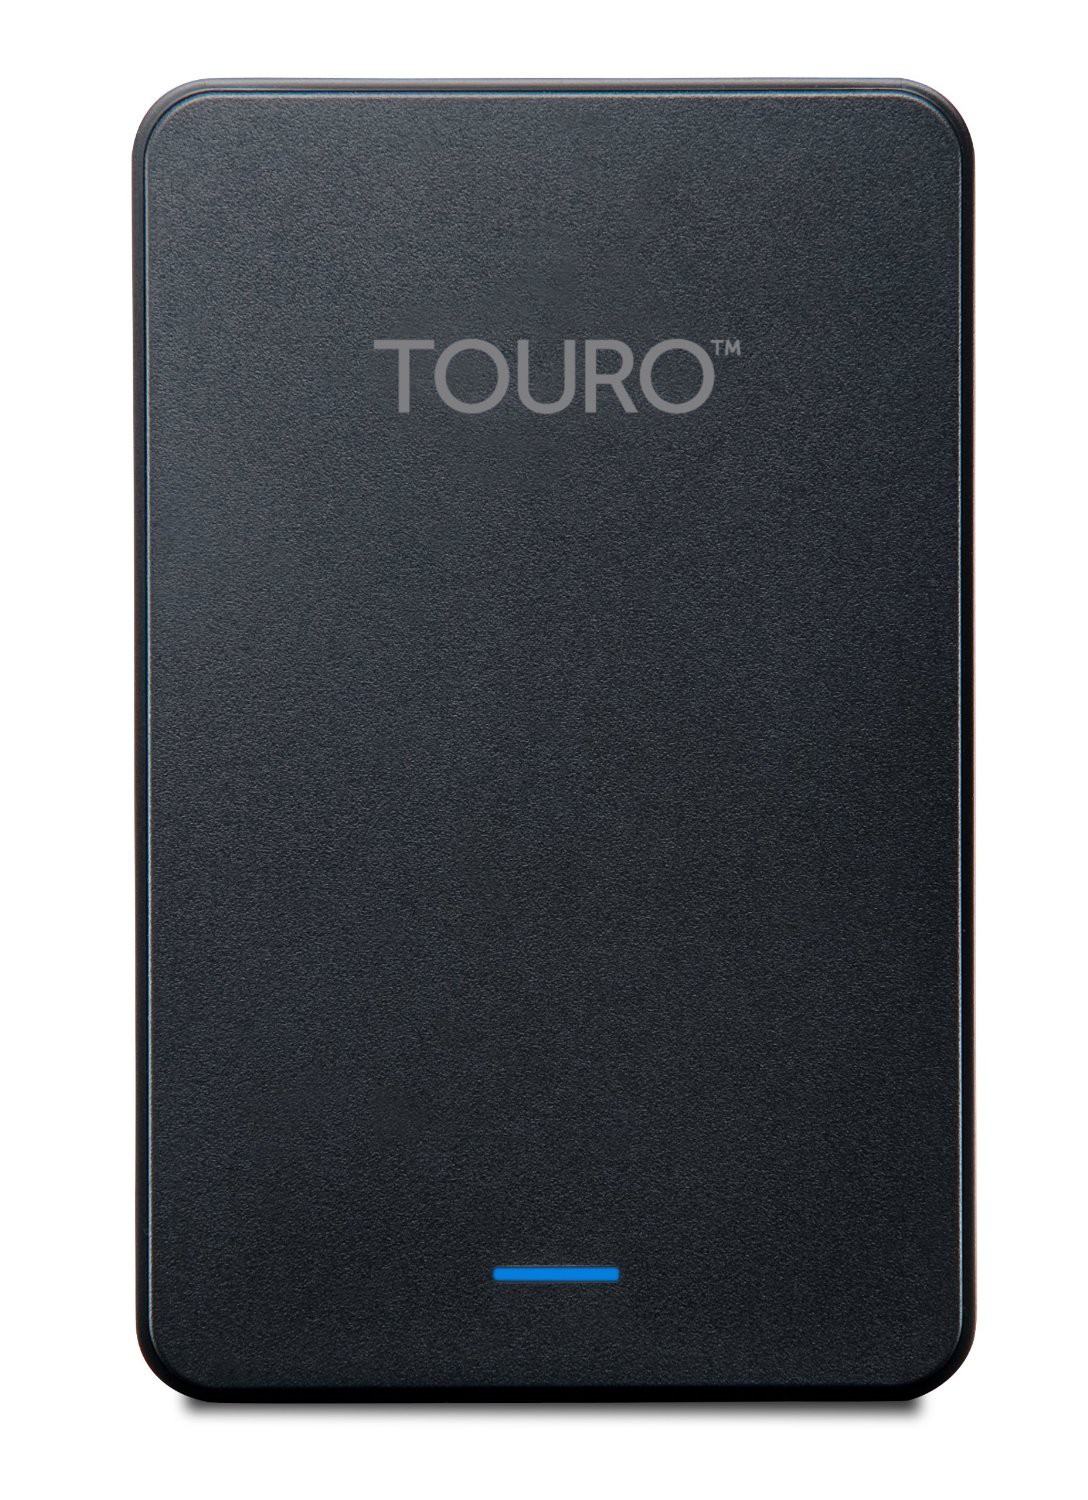 Hard Drive HGST Touro Mobile By USB 3.0 Black